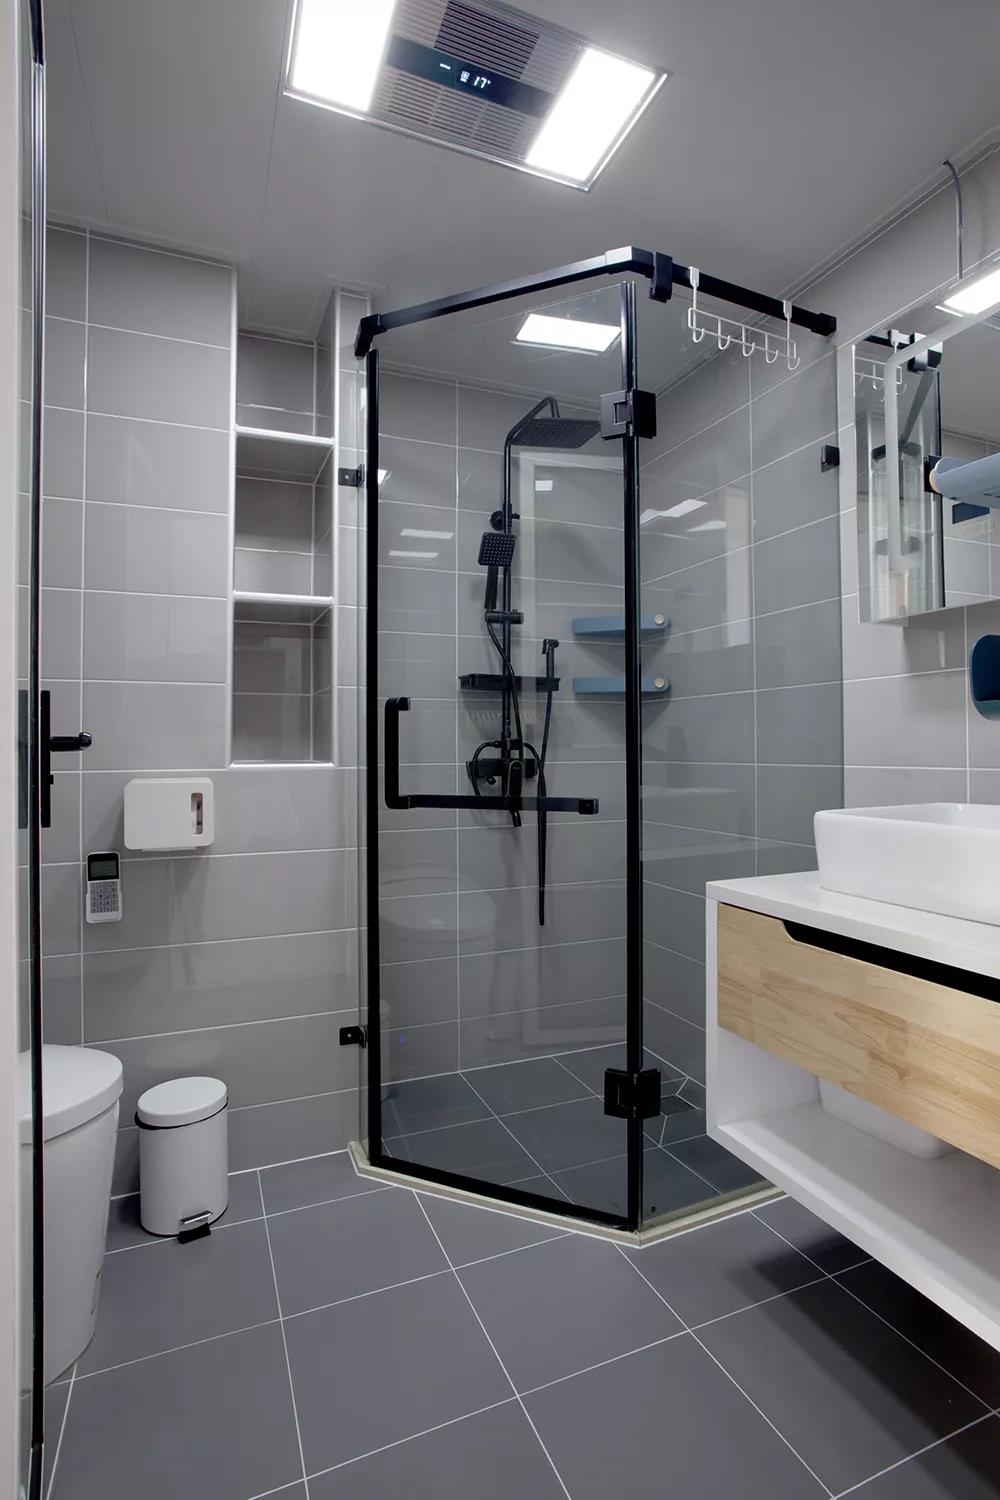 卫生间以灰色为主基调，干湿分离完整，适当的照明点缀让整体空间更加明亮。